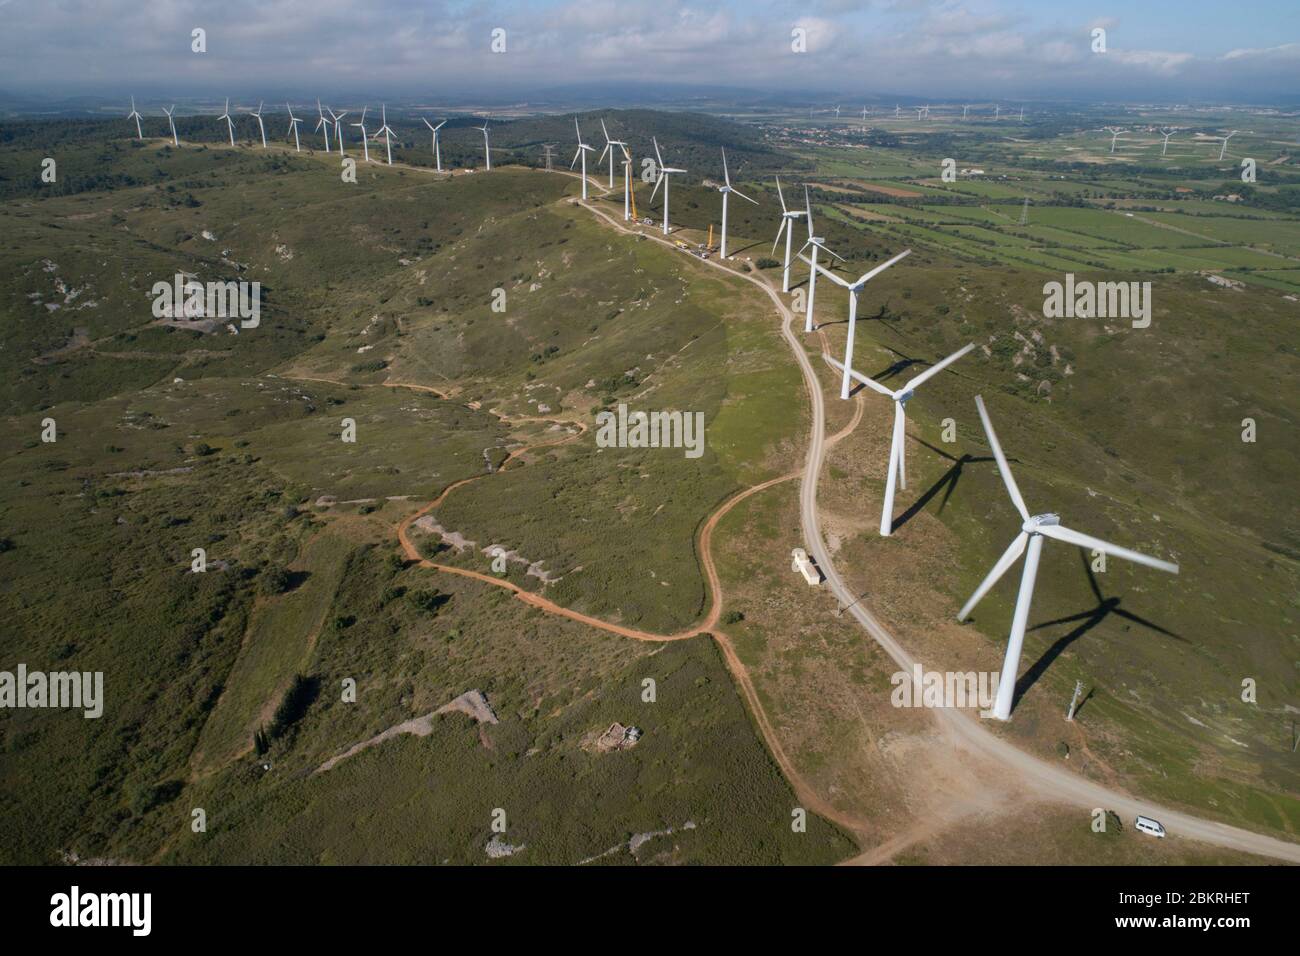 Frankreich, Aude, Nevian, Windpark Grande Garrigue de Nevian, bestehend aus 21 Windturbinen, 0,85 MW gamesa eolica Turbine für eine Gesamtleistung von 17.55 MW, Compagnie du vent LCV, Engie Green, Tochtergesellschaft von '' Engie spezialisiert auf erneuerbare Energien (Luftaufnahme) Stockfoto